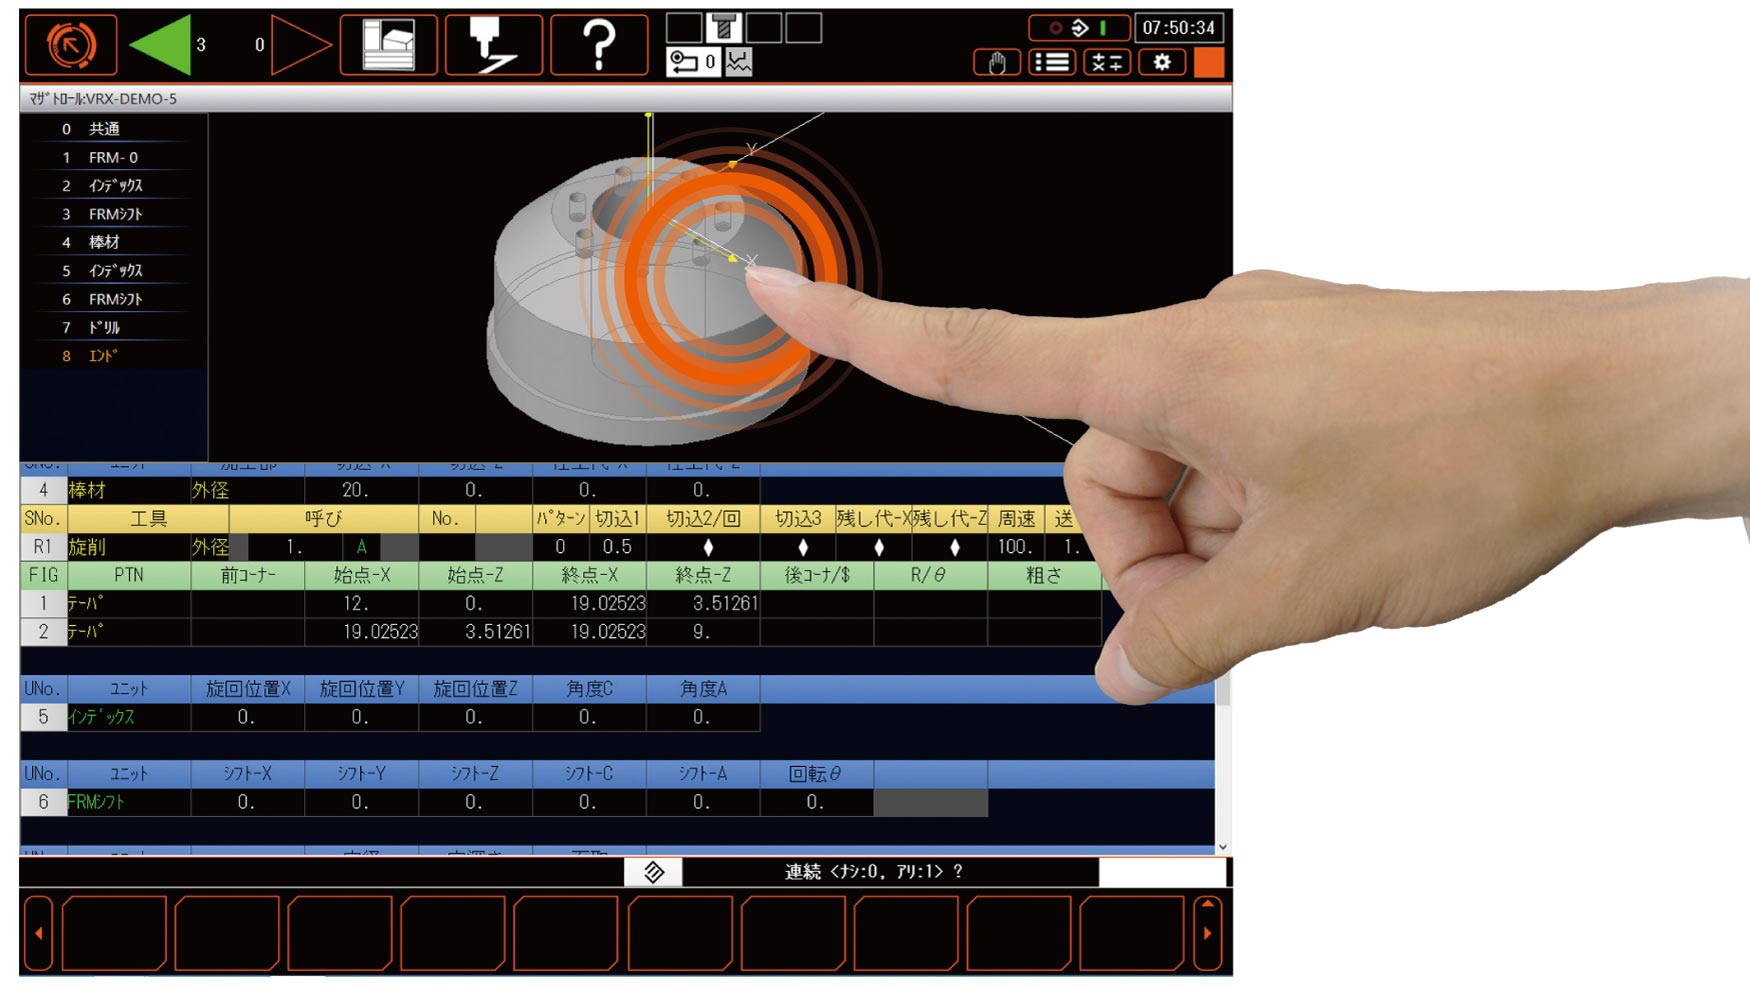 SmoothX cuenta con una pantalla tctil fcil de usar, similar a los smartphones o tabletas